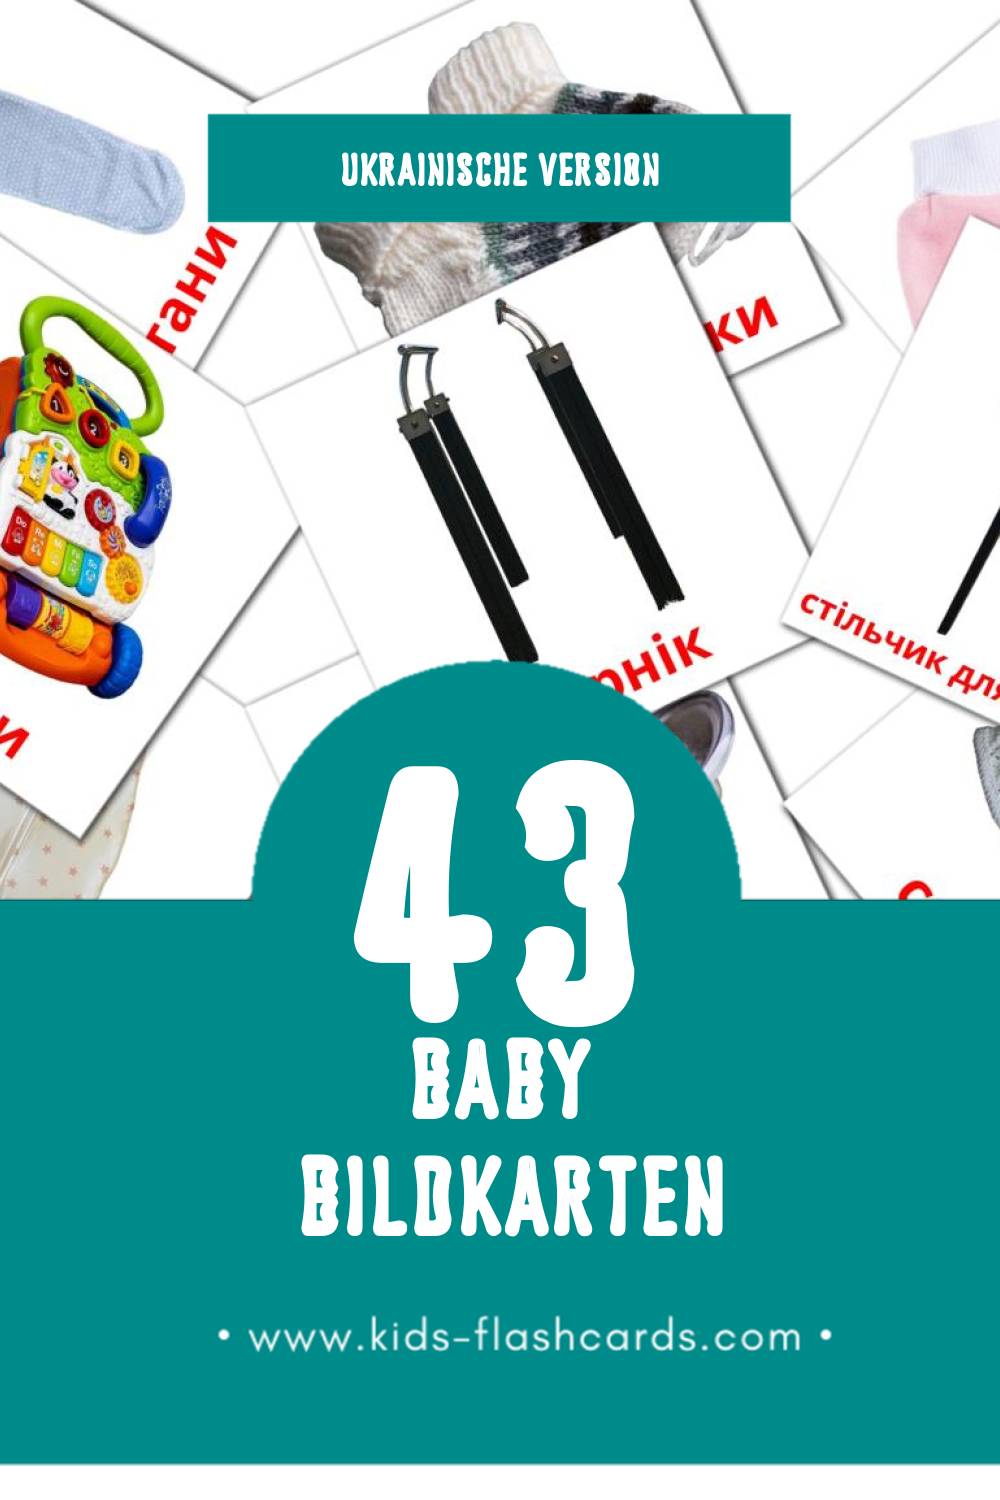 Visual Малюк Flashcards für Kleinkinder (43 Karten in Ukrainisch)